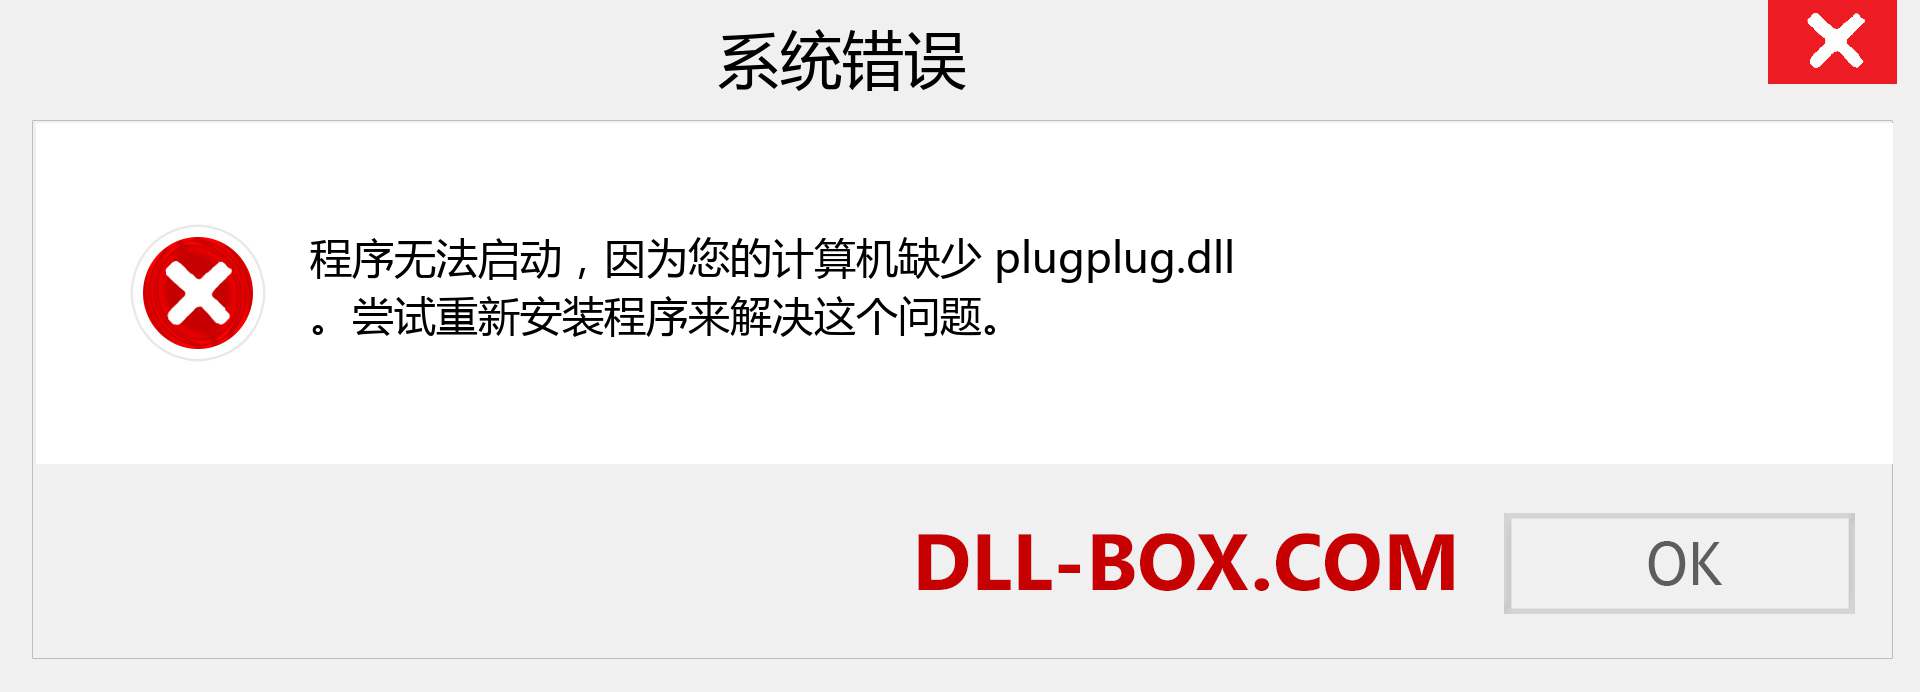 plugplug.dll 文件丢失？。 适用于 Windows 7、8、10 的下载 - 修复 Windows、照片、图像上的 plugplug dll 丢失错误